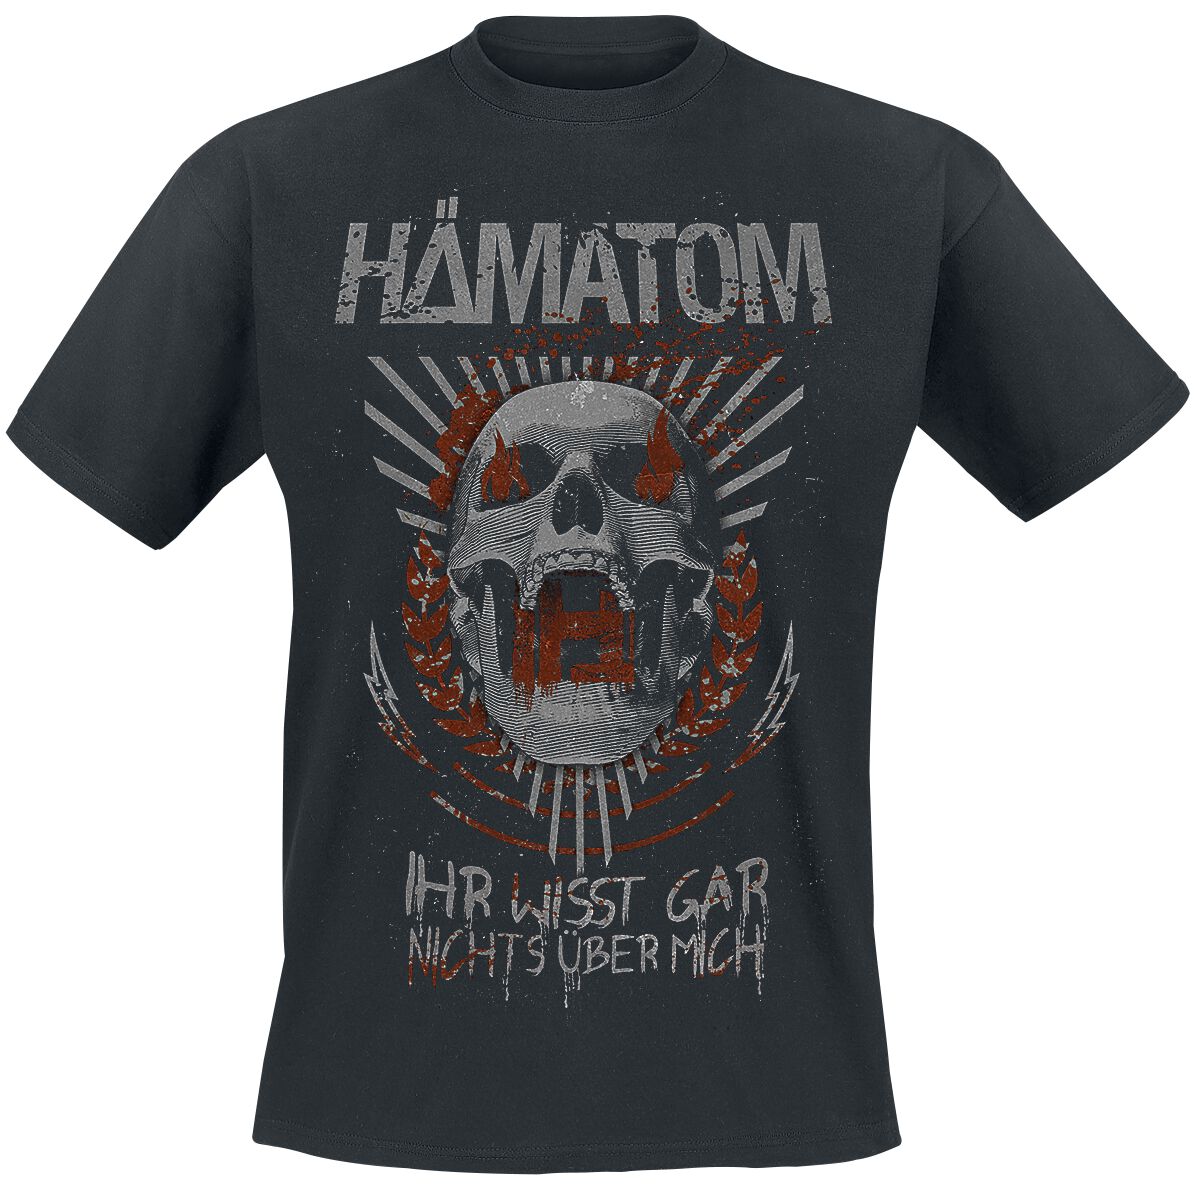 Hämatom T-Shirt - Ihr wisst gar nichts über mich - S bis 5XL - für Männer - Größe L - schwarz  - Lizenziertes Merchandise!